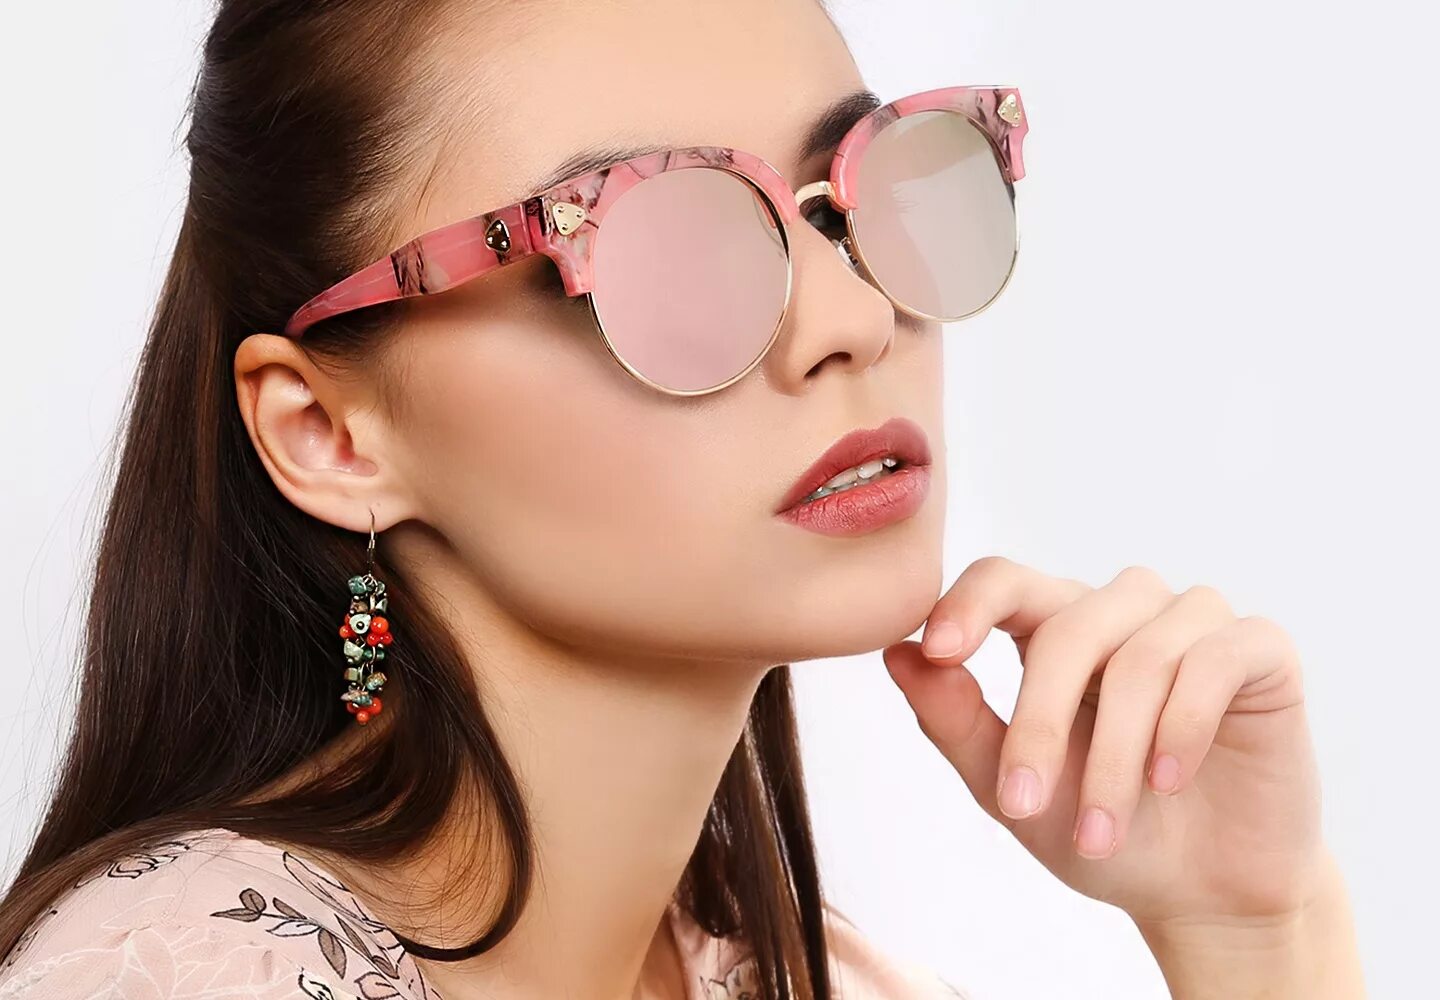 Розовые очки. Розовые солнцезащитные очки. Очки солнцезащитные женские розовые. Большие солнцезащитные очки розовые. Что значат розовые очки